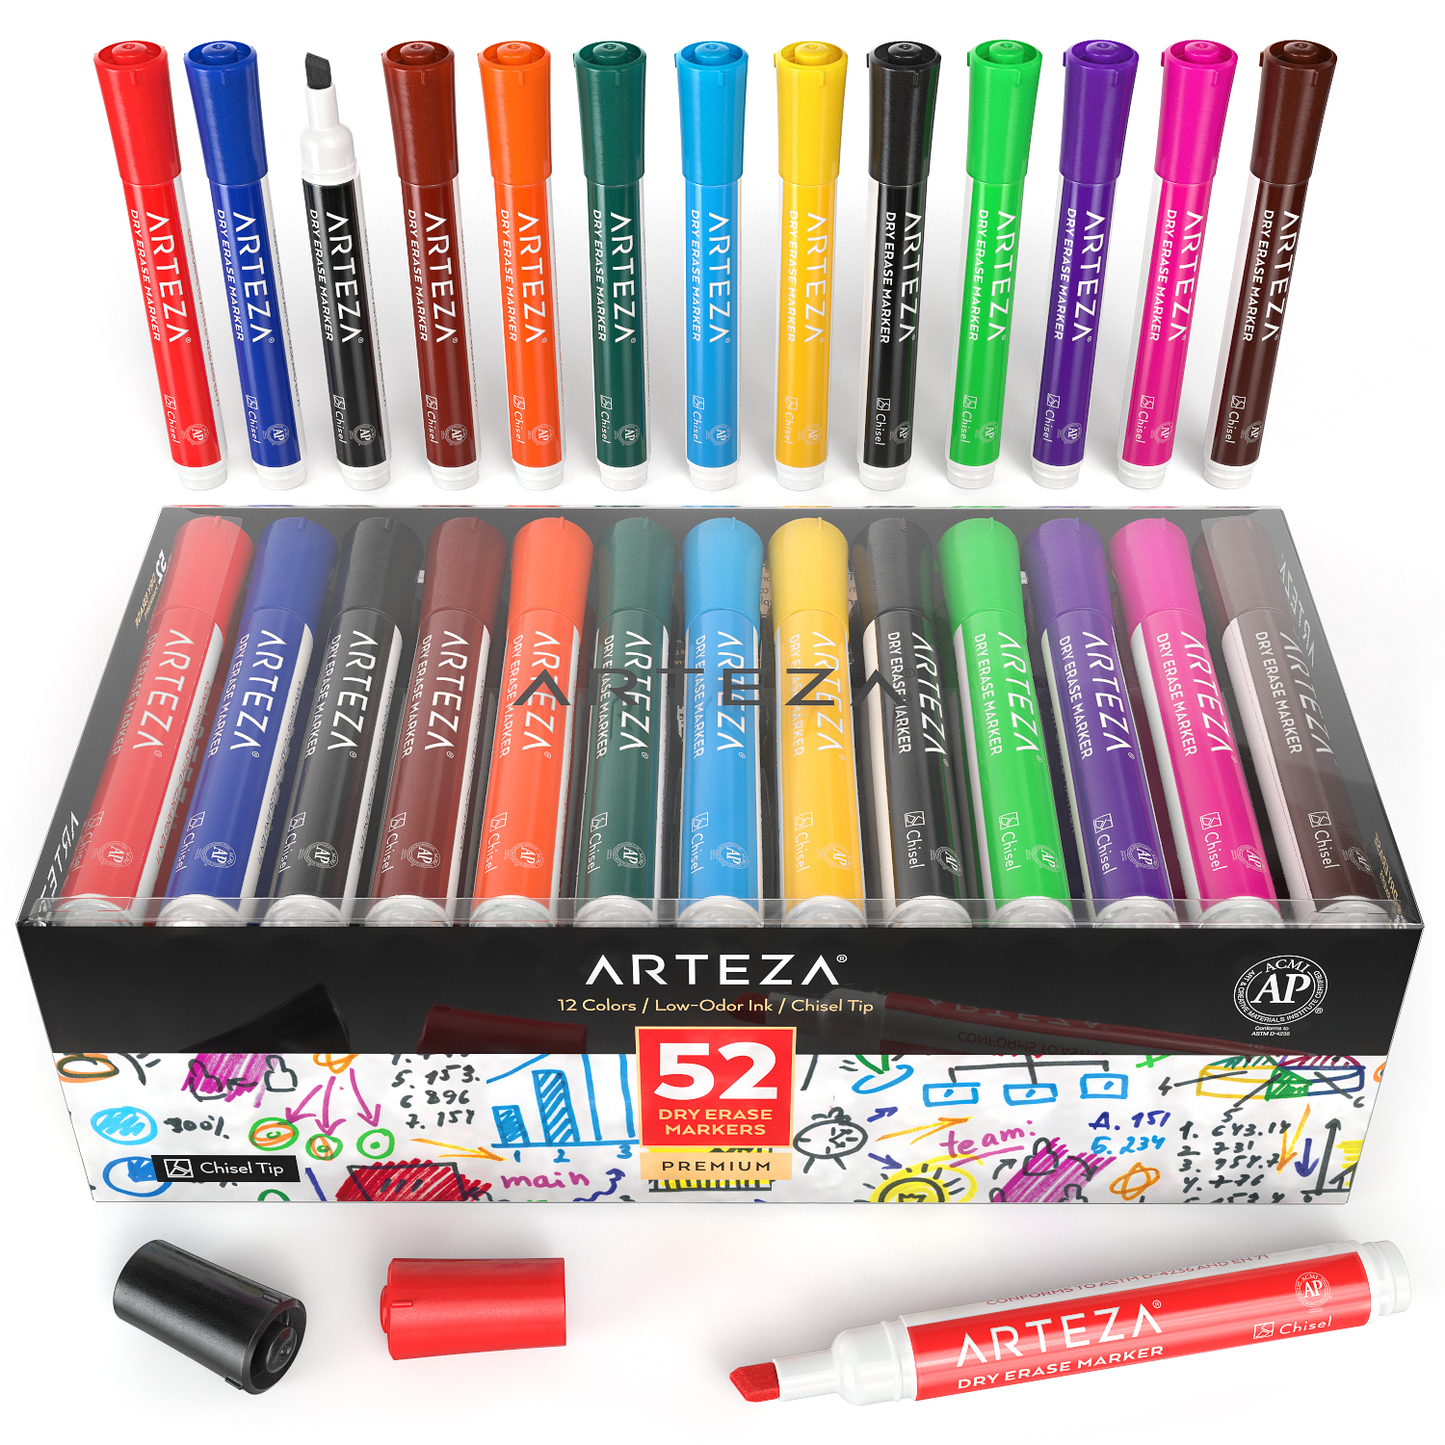 https://arteza.com/cdn/shop/products/dry-erase-markers-set-of-52-12-colors_welVIQOm.png?v=1652889109&width=1445